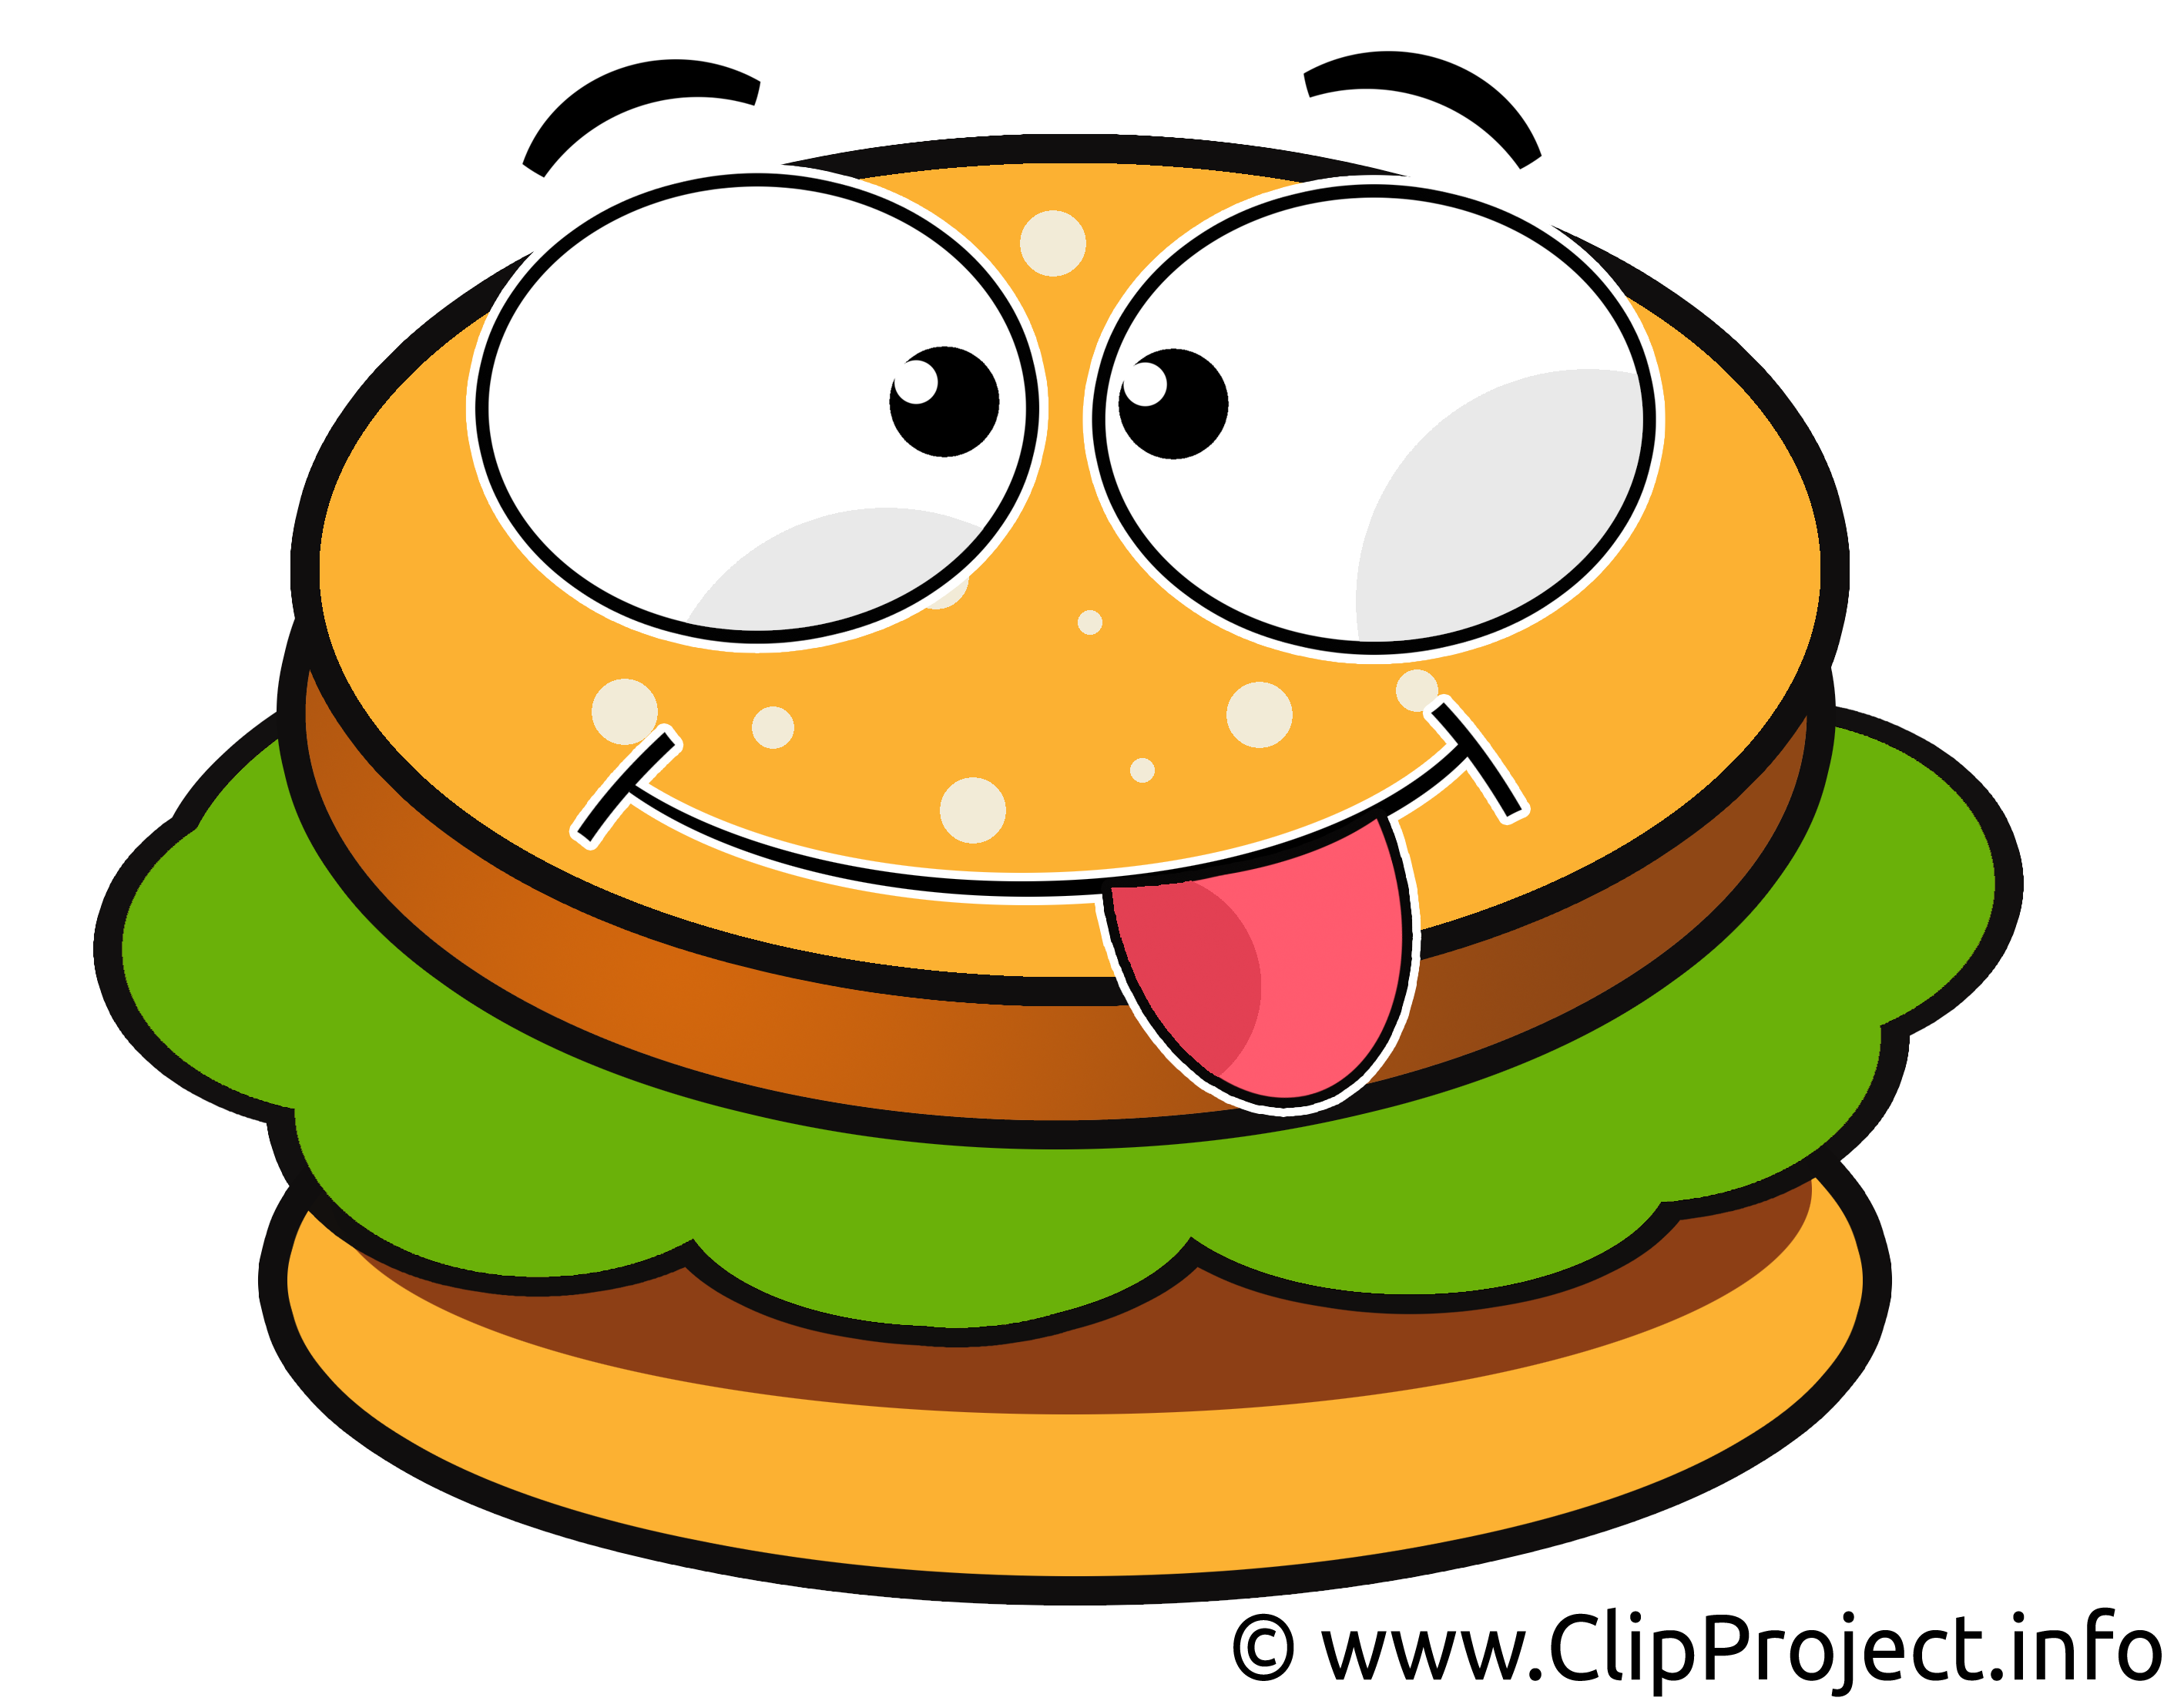 Hamburger clipart gratuit – Dessin images